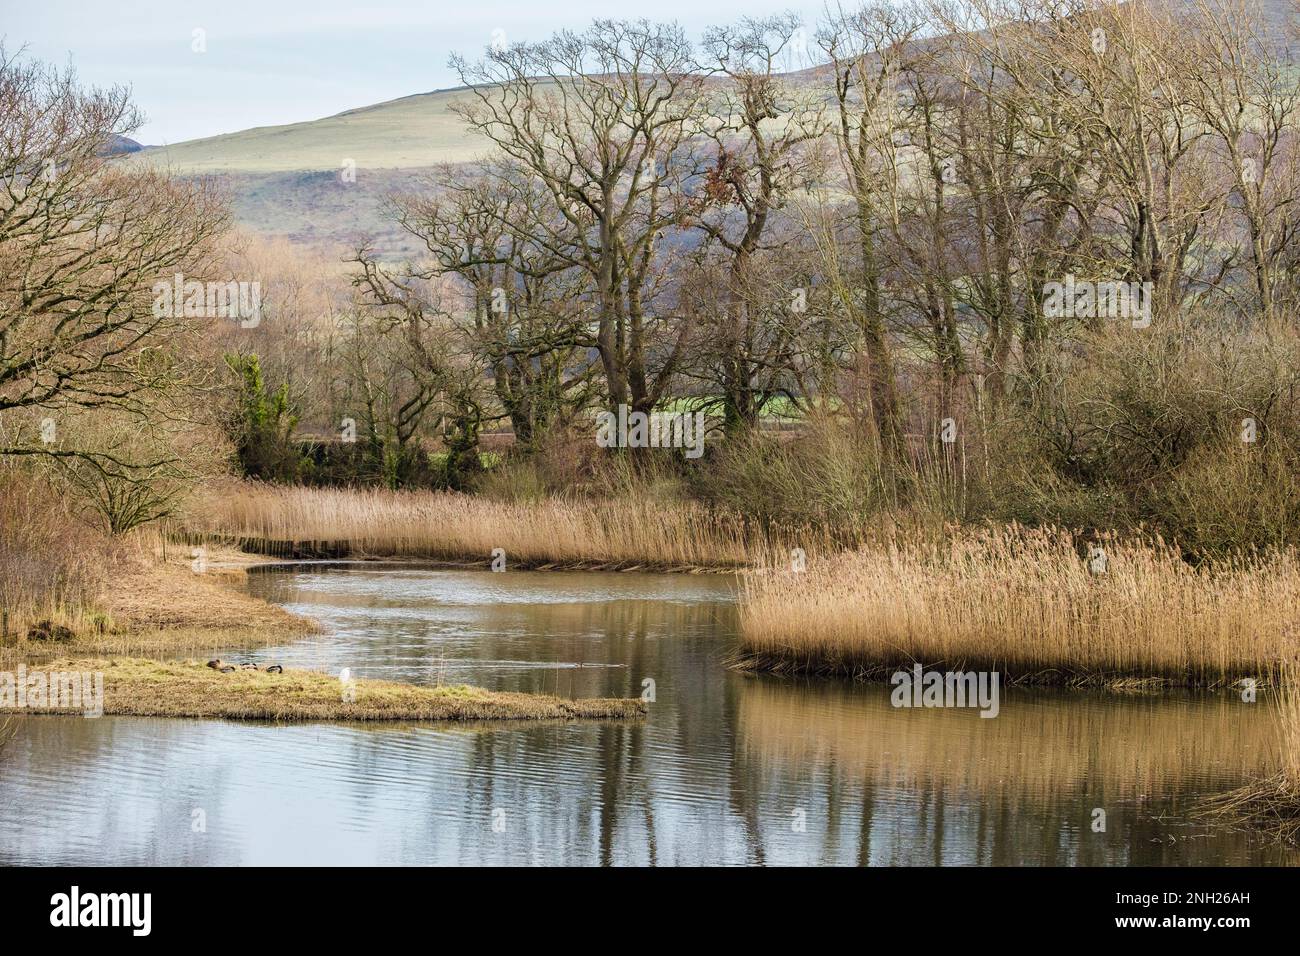 Blick über die Schilflagunen im Naturschutzgebiet. Die Spinnies, Aberogwen, Bangor, Gwynedd, Wales, Großbritannien, Großbritannien Stockfoto